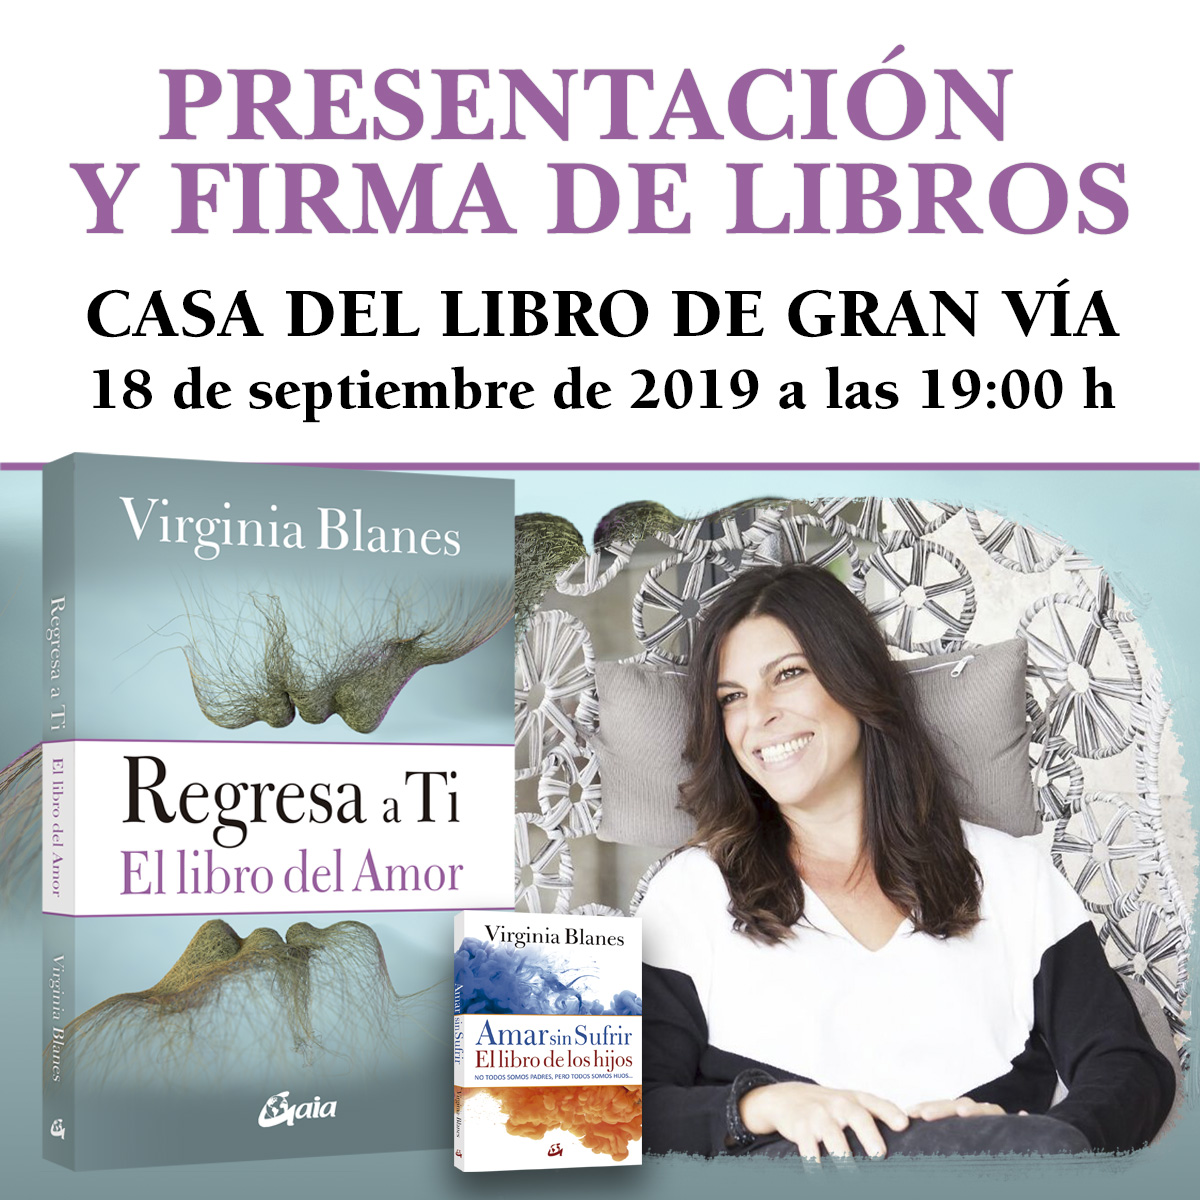 Presentación del libro "Regresa a ti" de Virginia Blanes